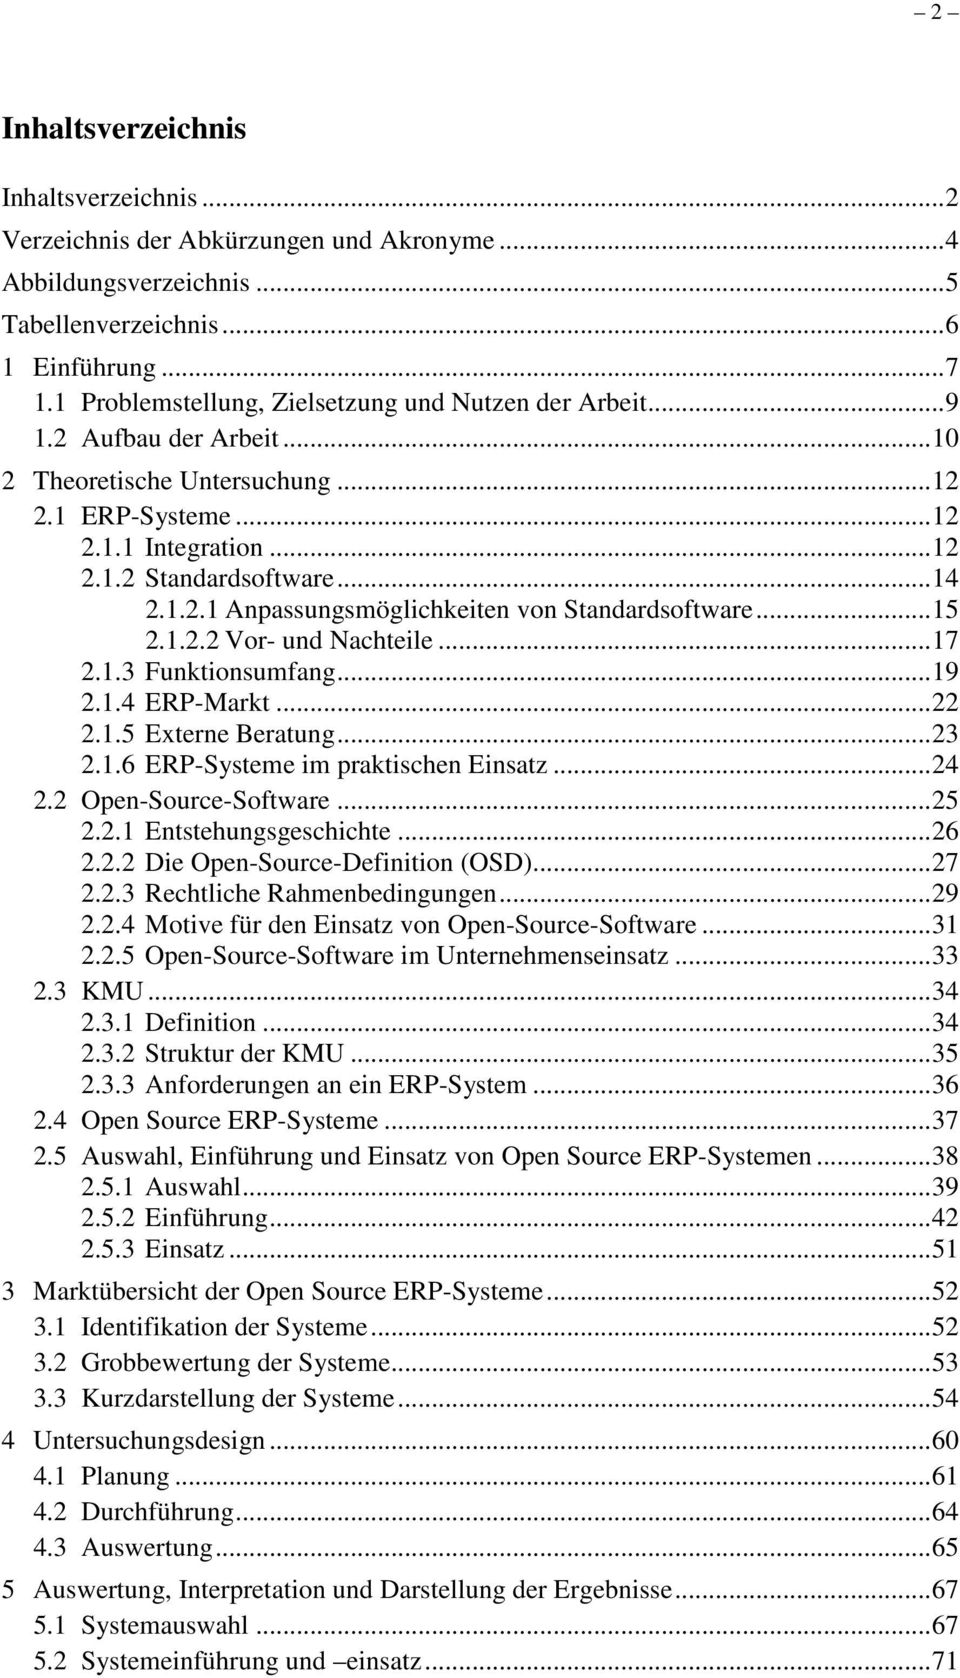 ..15 2.1.2.2 Vor- und Nachteile...17 2.1.3 Funktionsumfang...19 2.1.4 ERP-Markt...22 2.1.5 Externe Beratung...23 2.1.6 ERP-Systeme im praktischen Einsatz...24 2.2 Open-Source-Software...25 2.2.1 Entstehungsgeschichte.